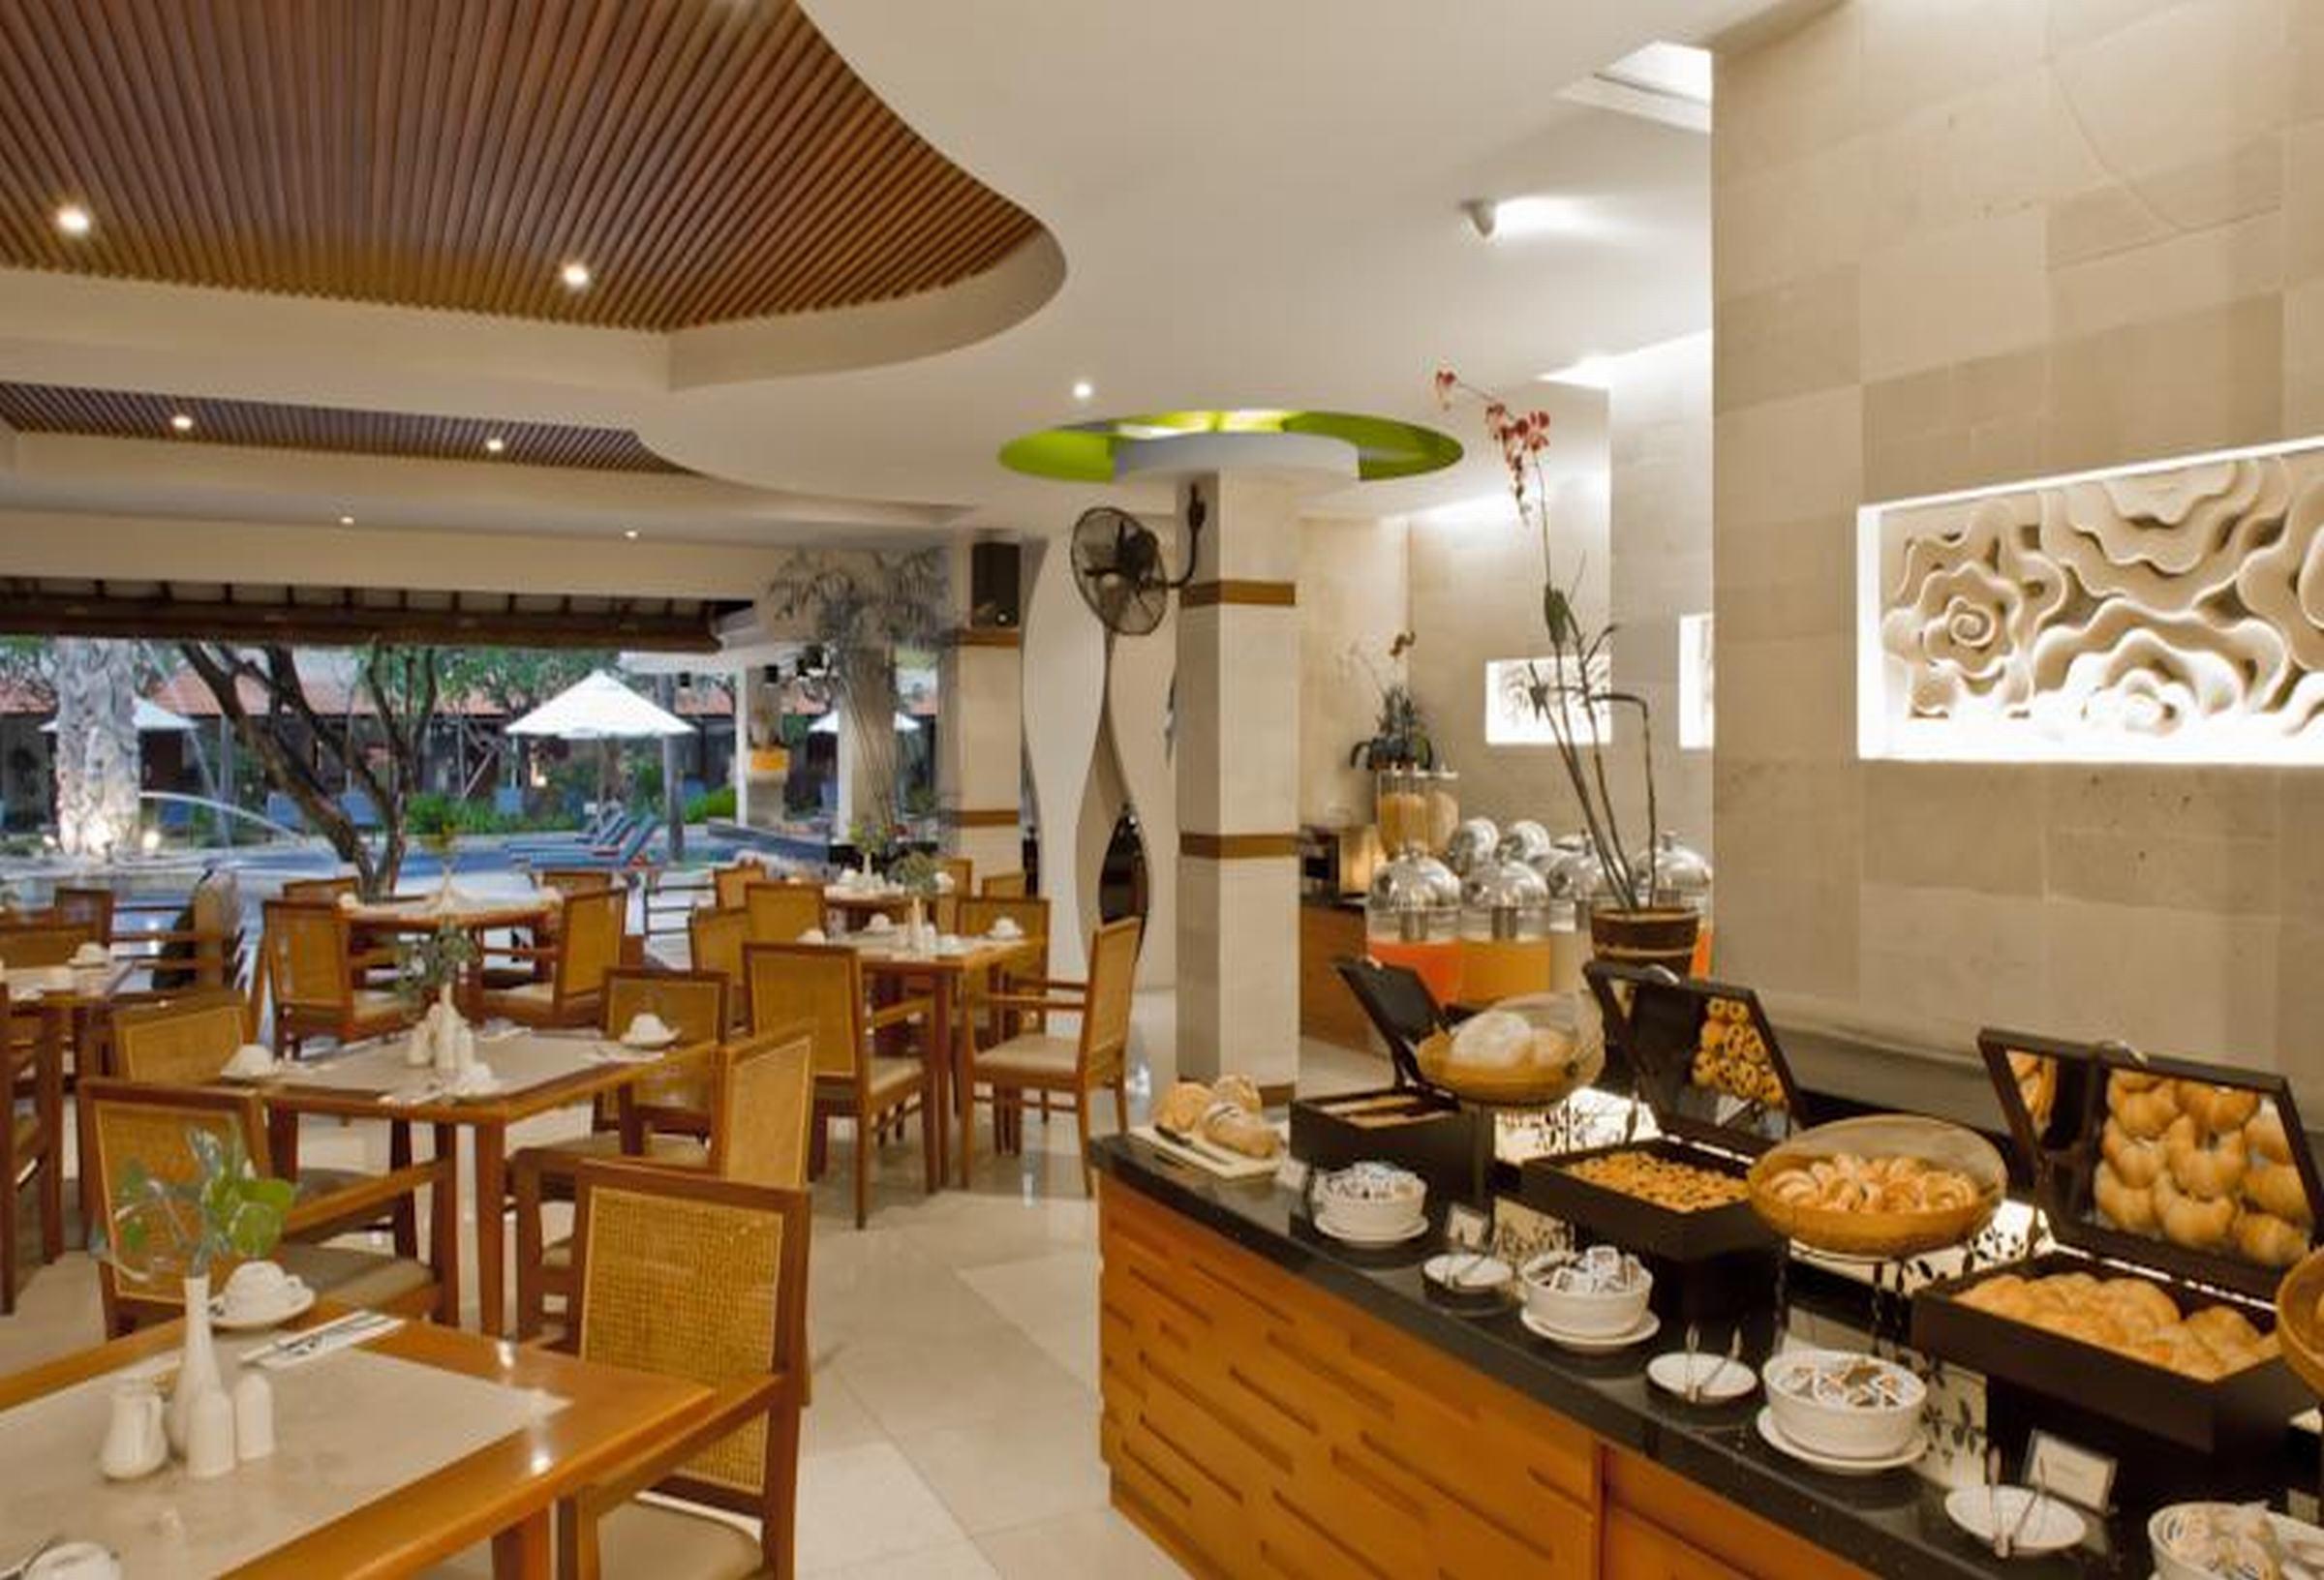 Bali Rani Hotel